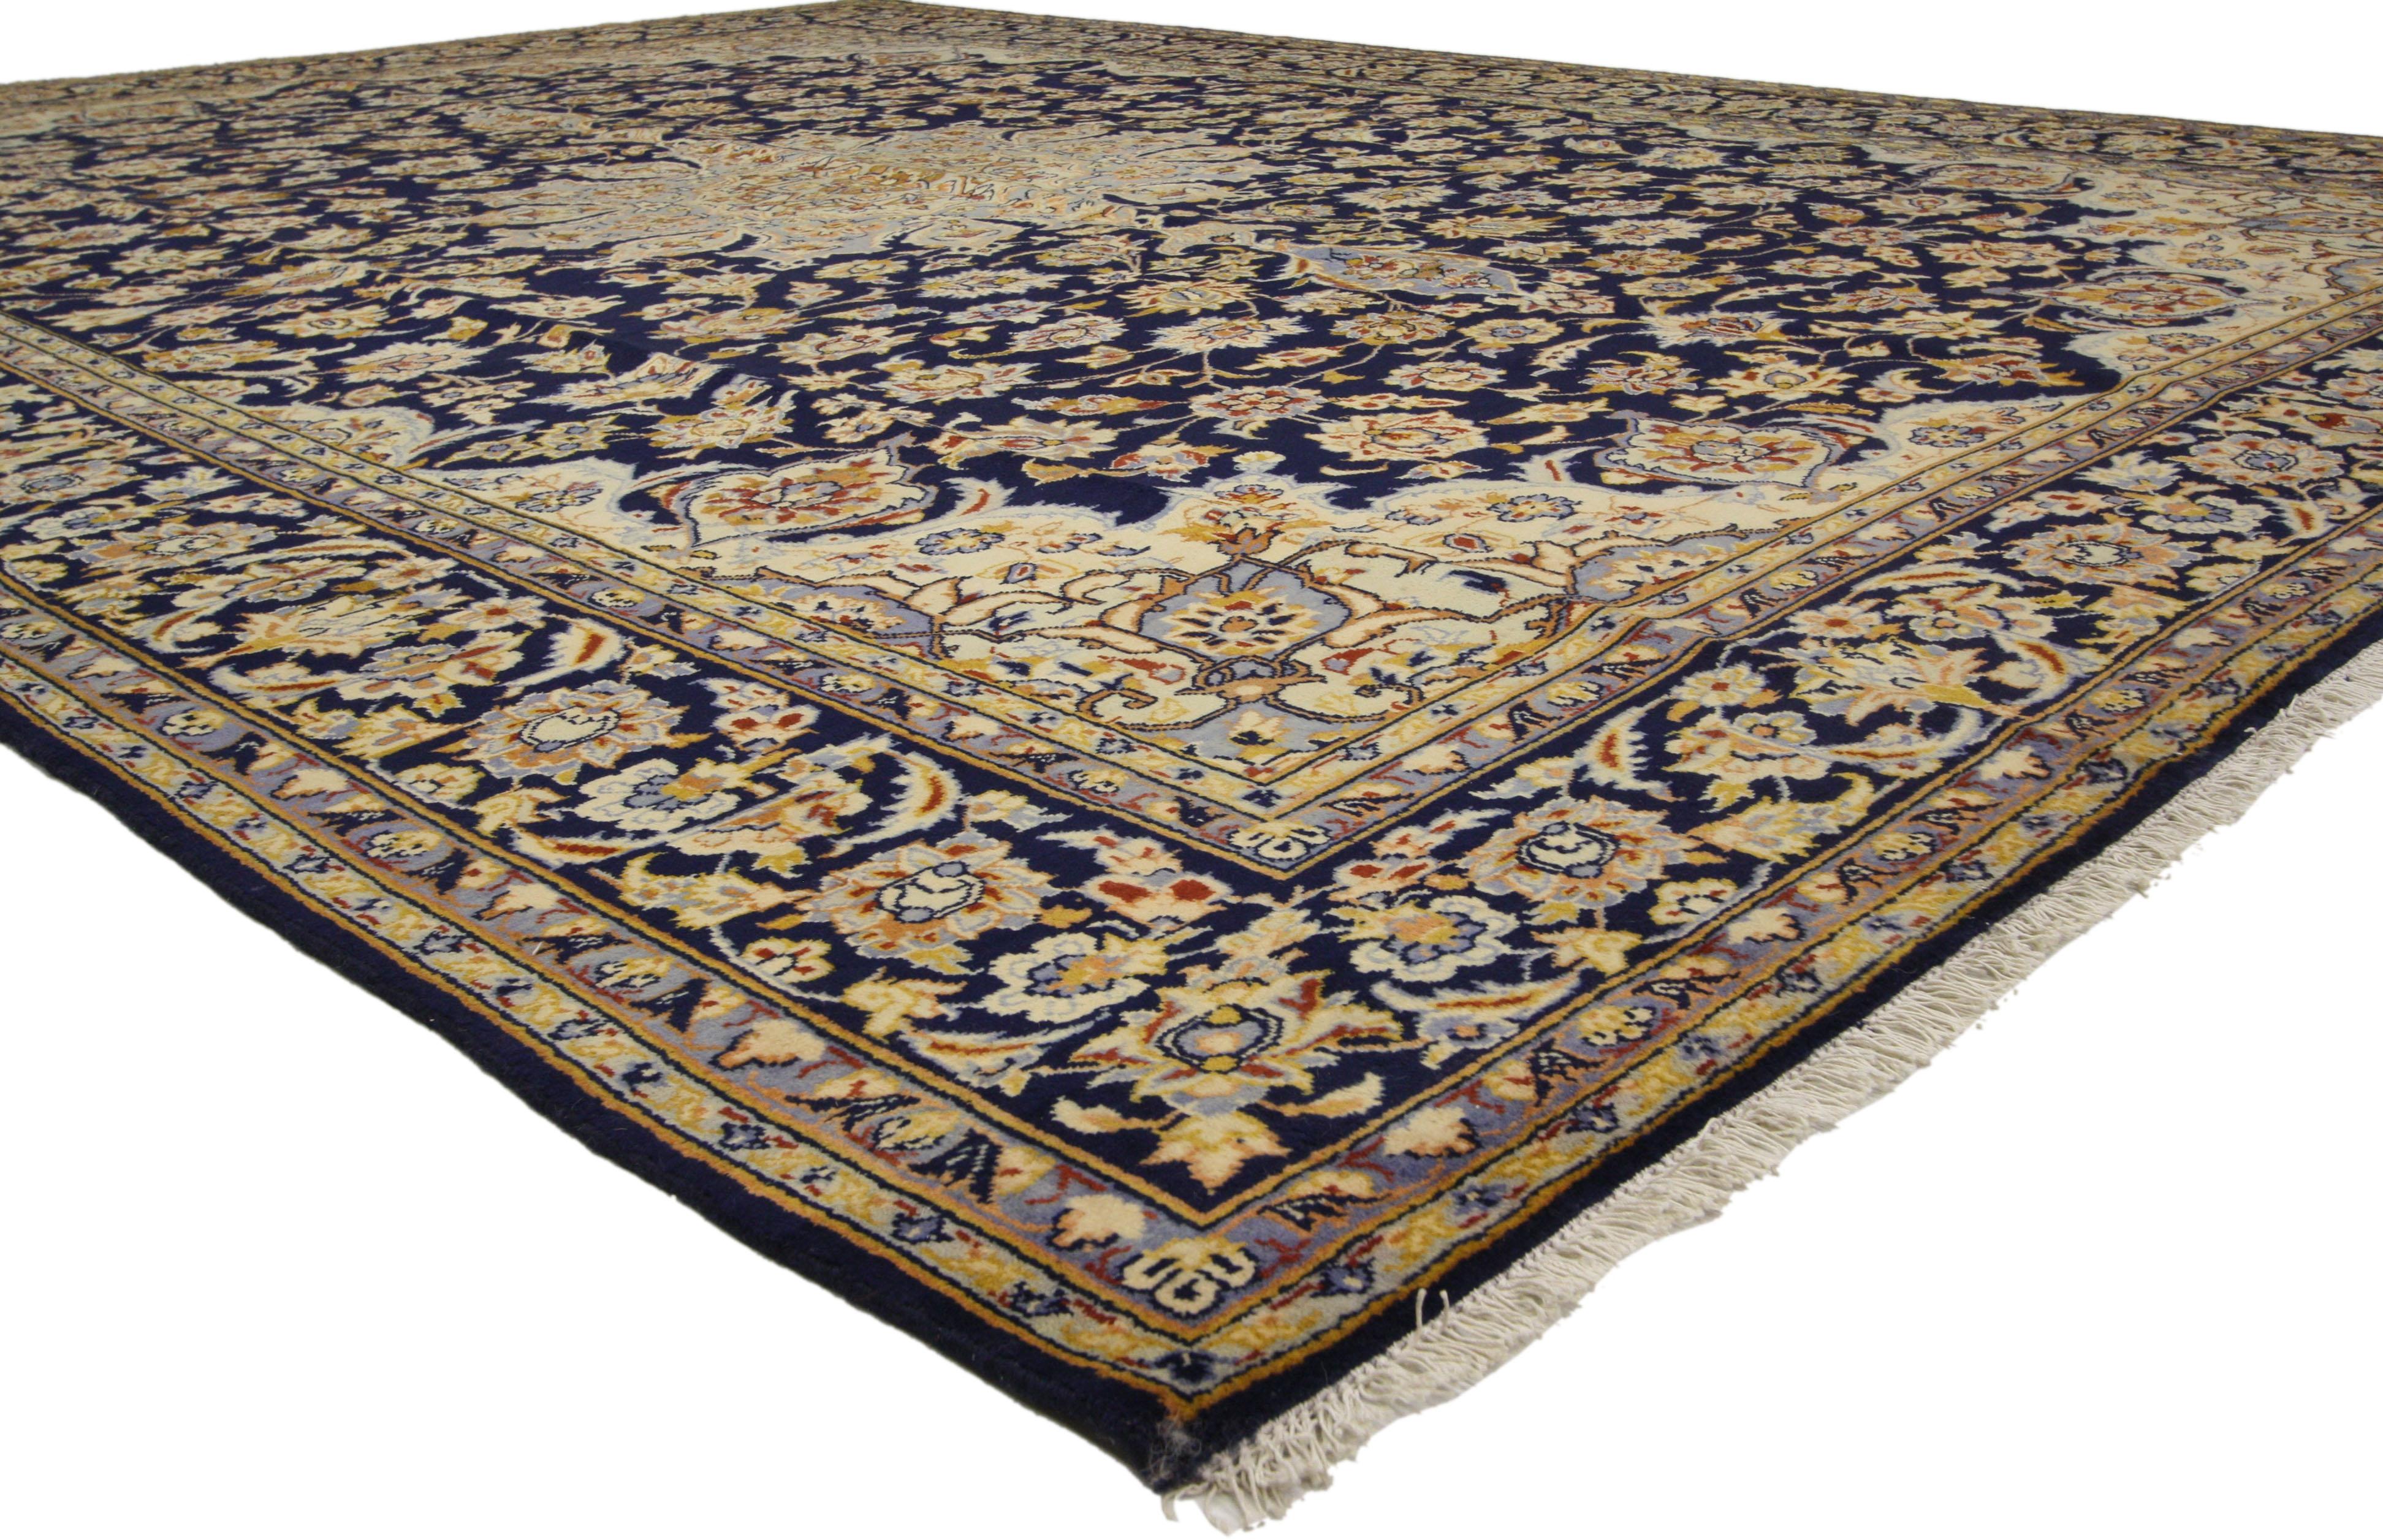 76013, alter persischer Najafabad-Teppich im romantischen arabesken Barock-Stil. Dieser handgeknüpfte persische Najafabad-Teppich aus Wolle zeigt ein zentrales Blumenmedaillon und ein florales Allover-Muster auf einem tintenblauen Feld. Eingerahmt